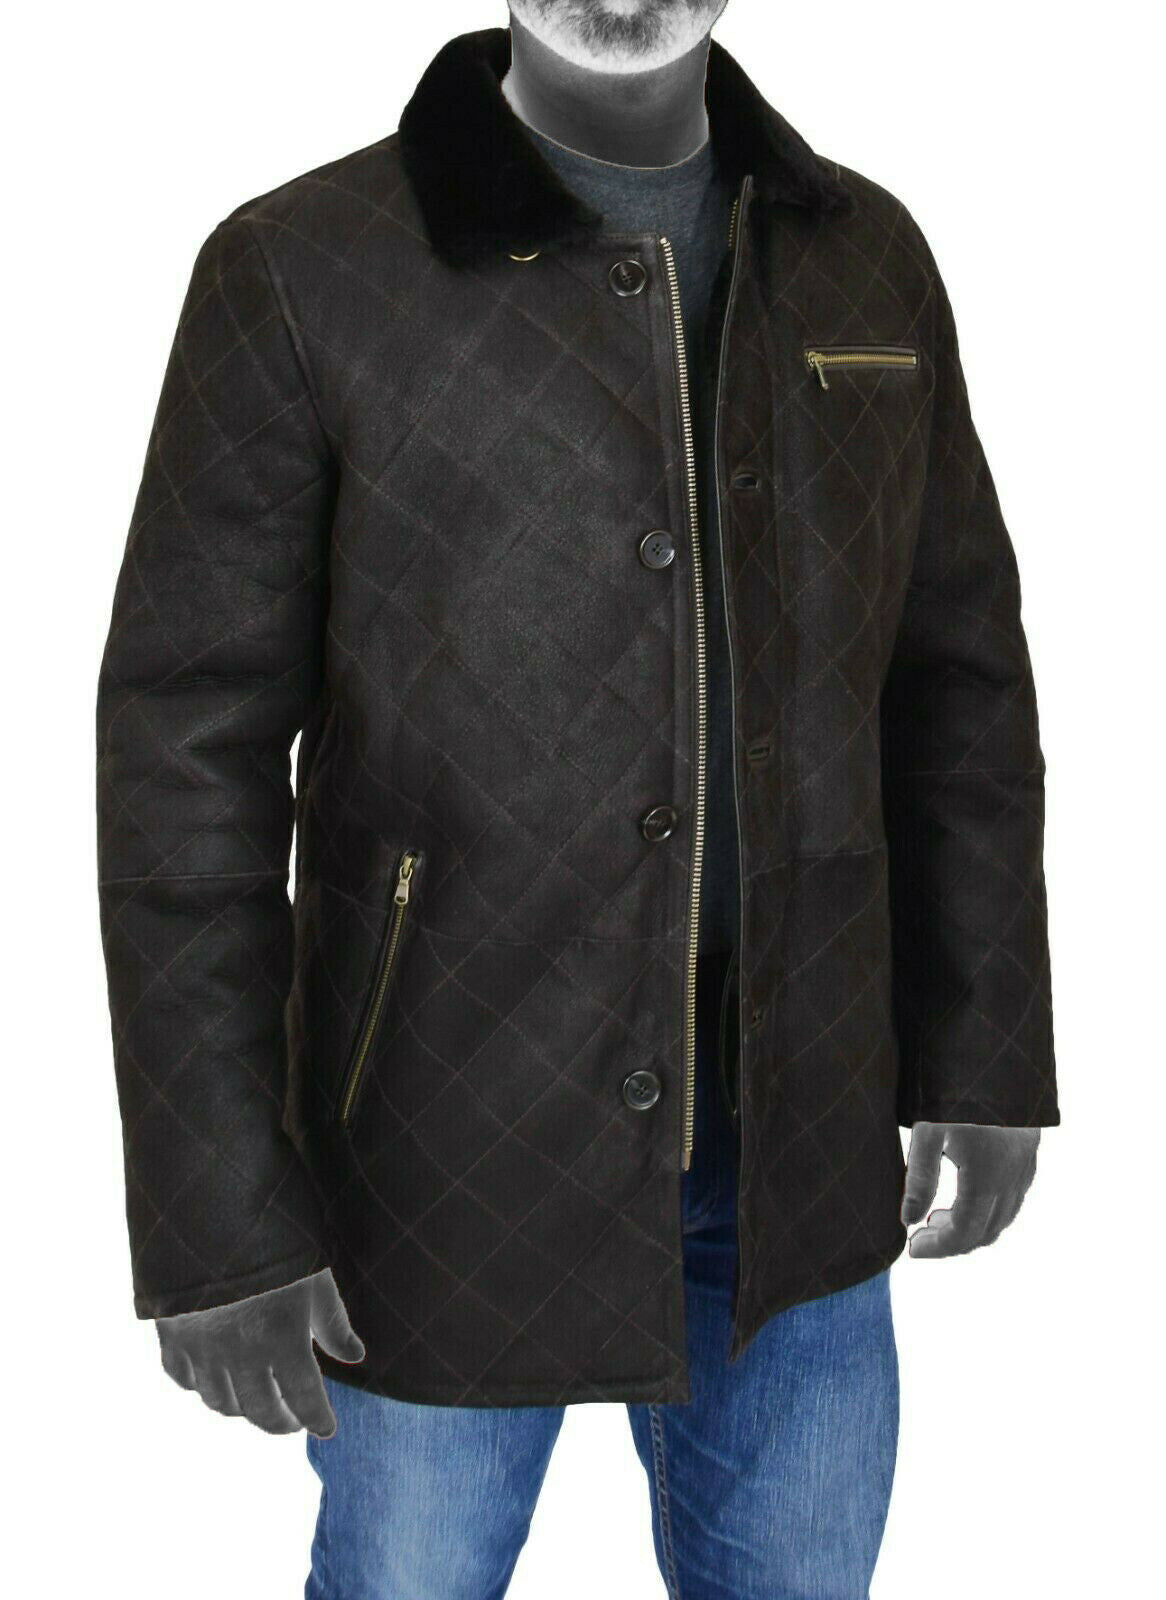 Spine Spark Men's Black Soft Suede Leather Shearling Coat Jacket